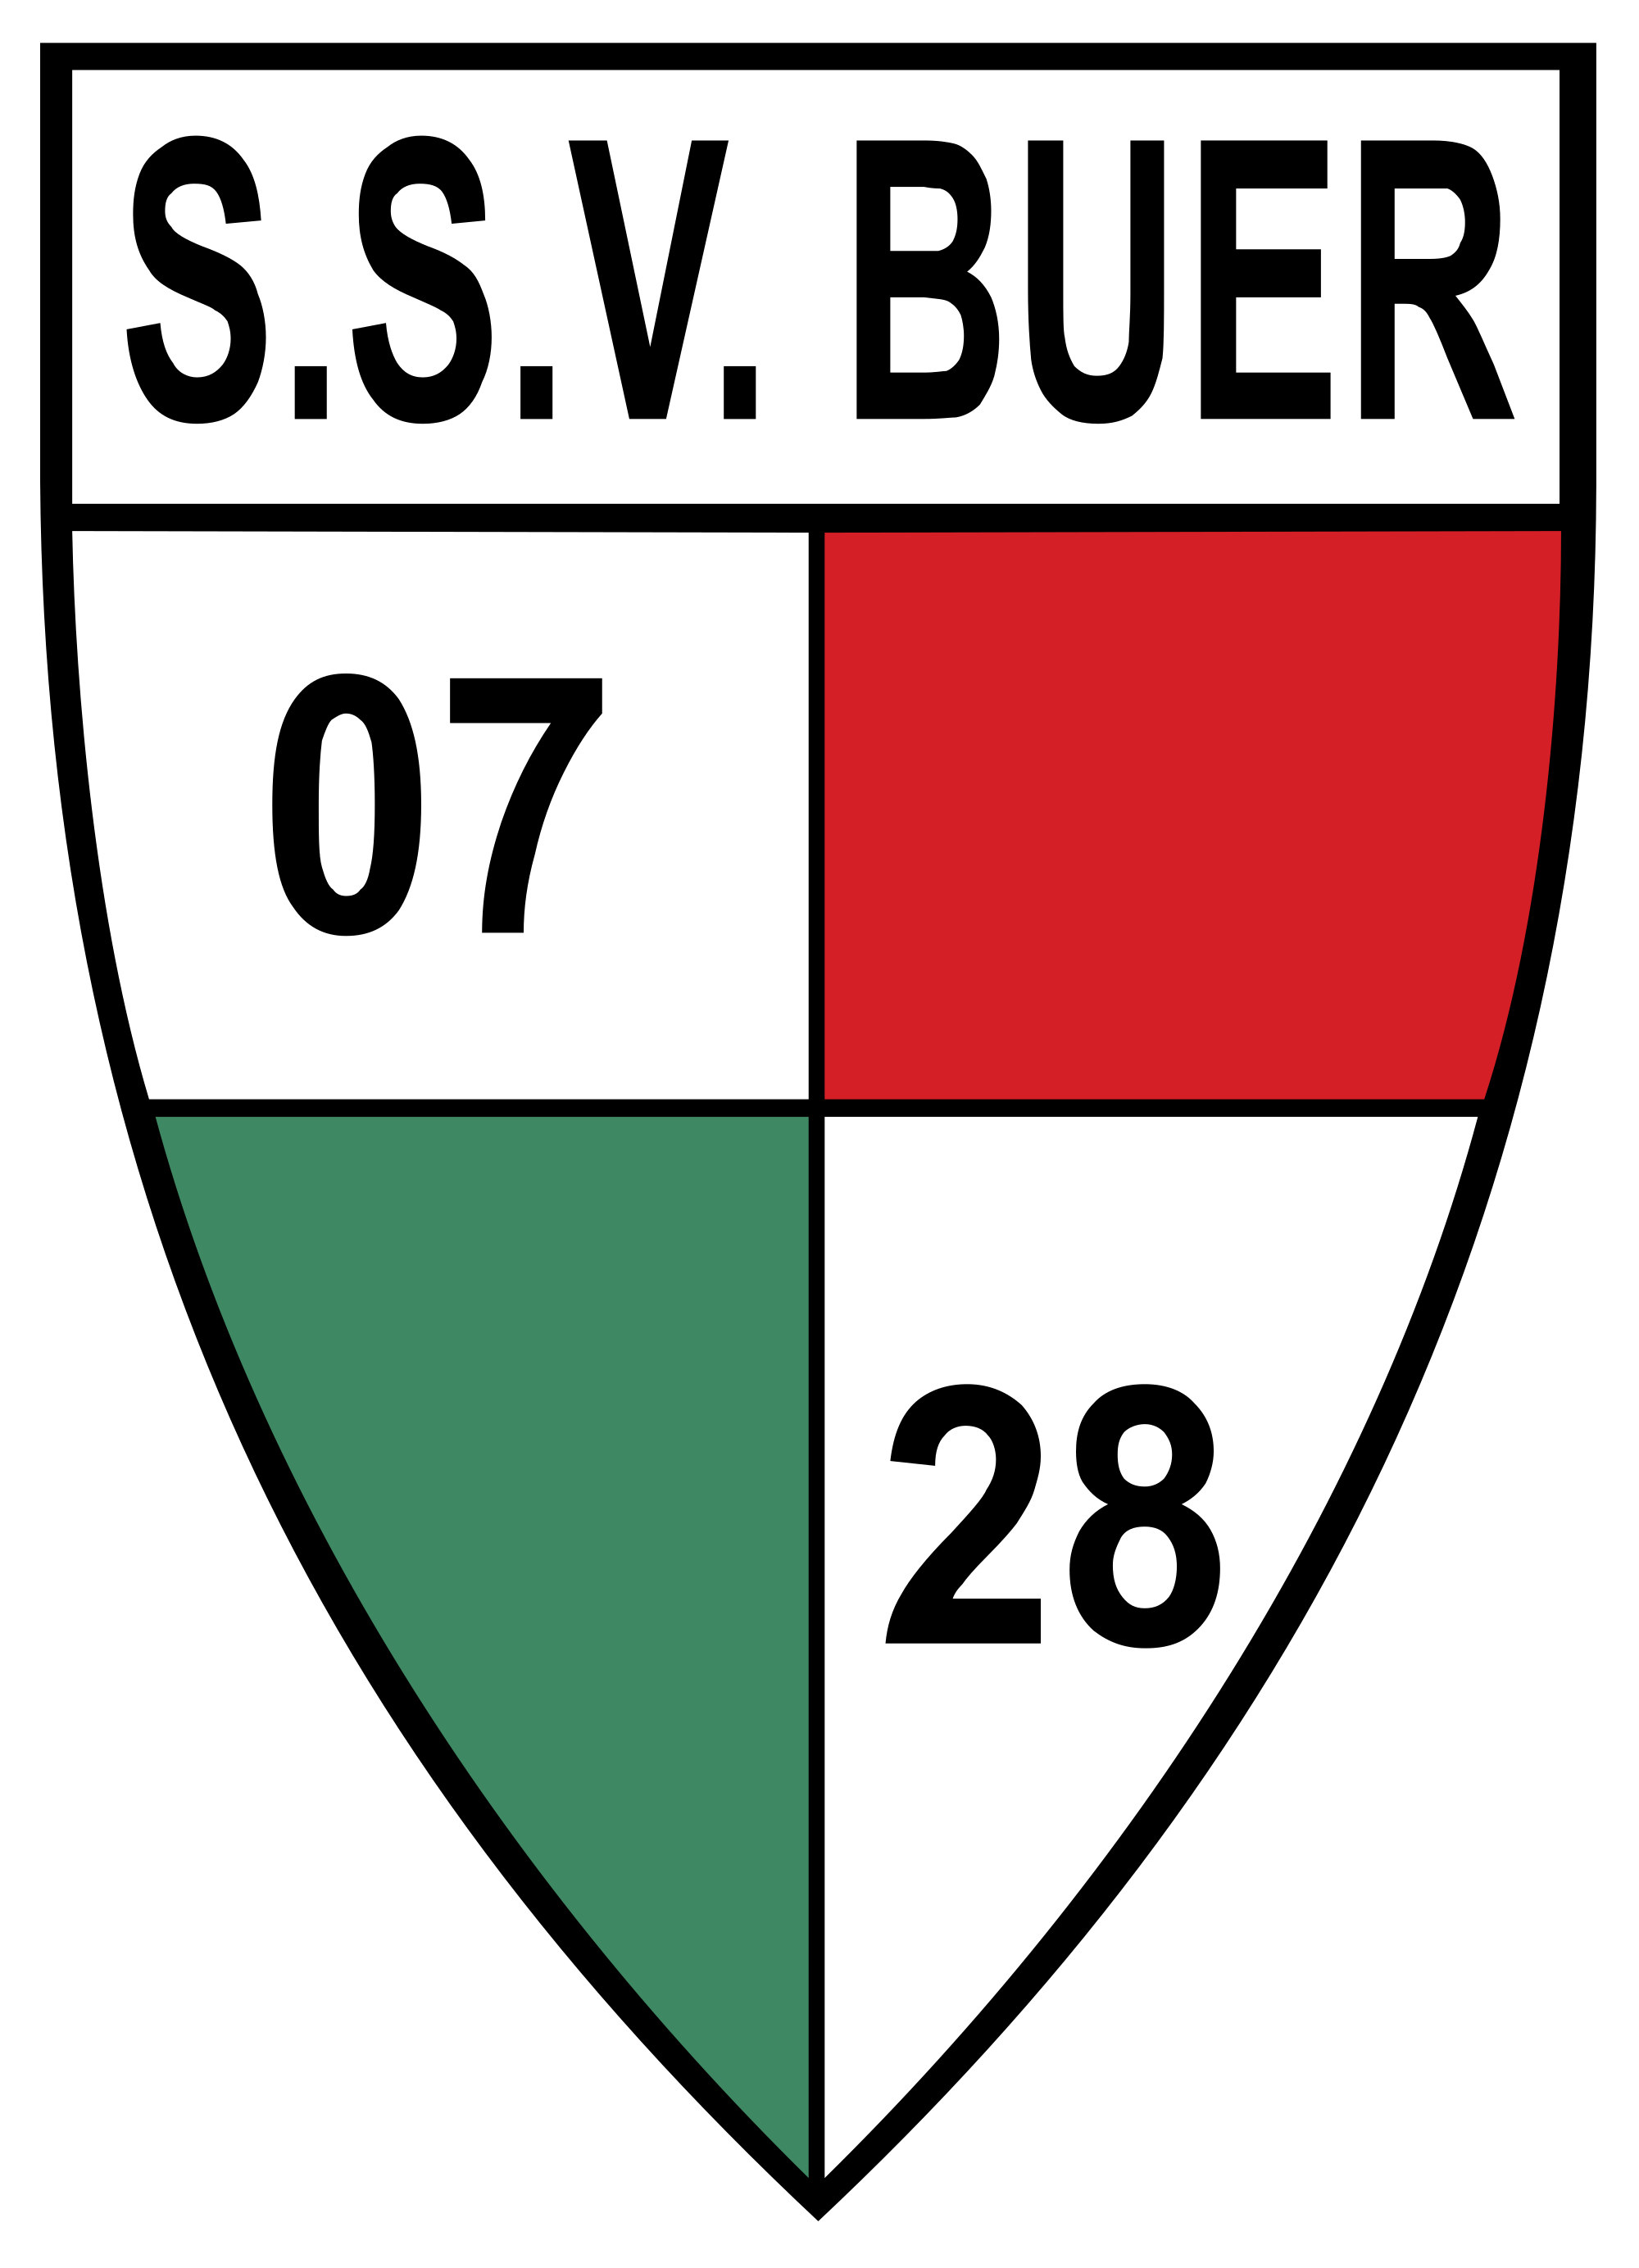 Wappen SSV Buer 07/28 III